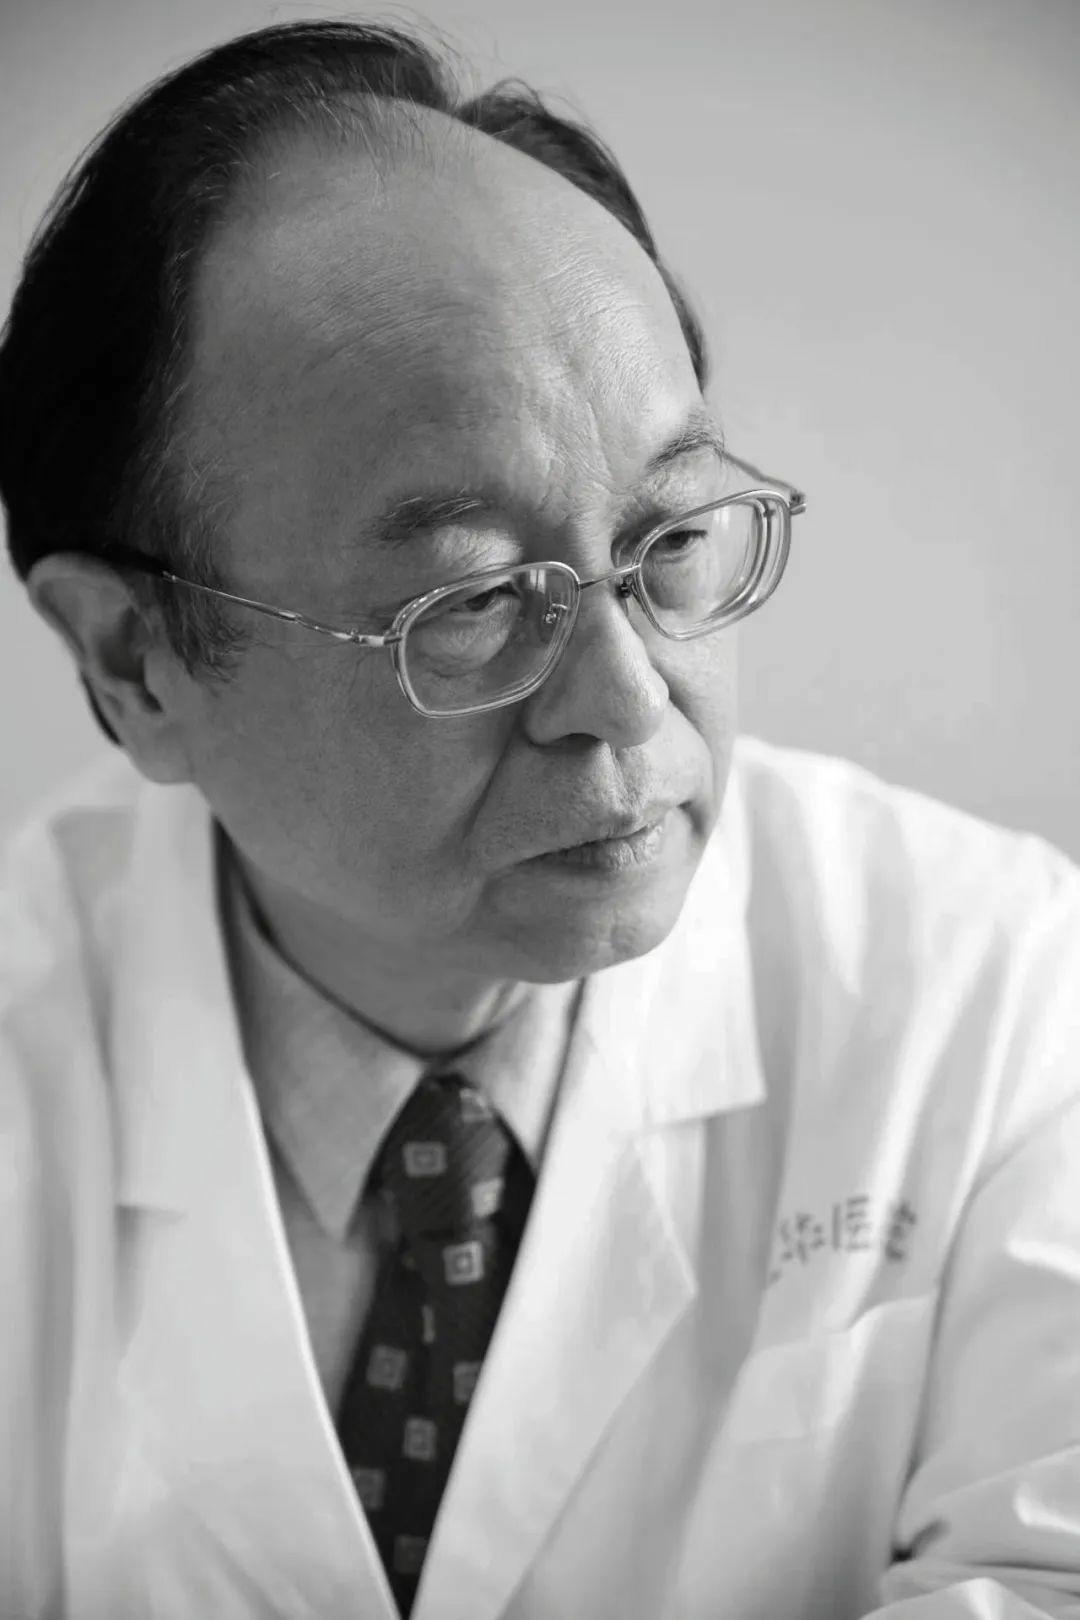 著名中医外科专家陆德<font color="red">铭</font>同志逝世，享年88岁